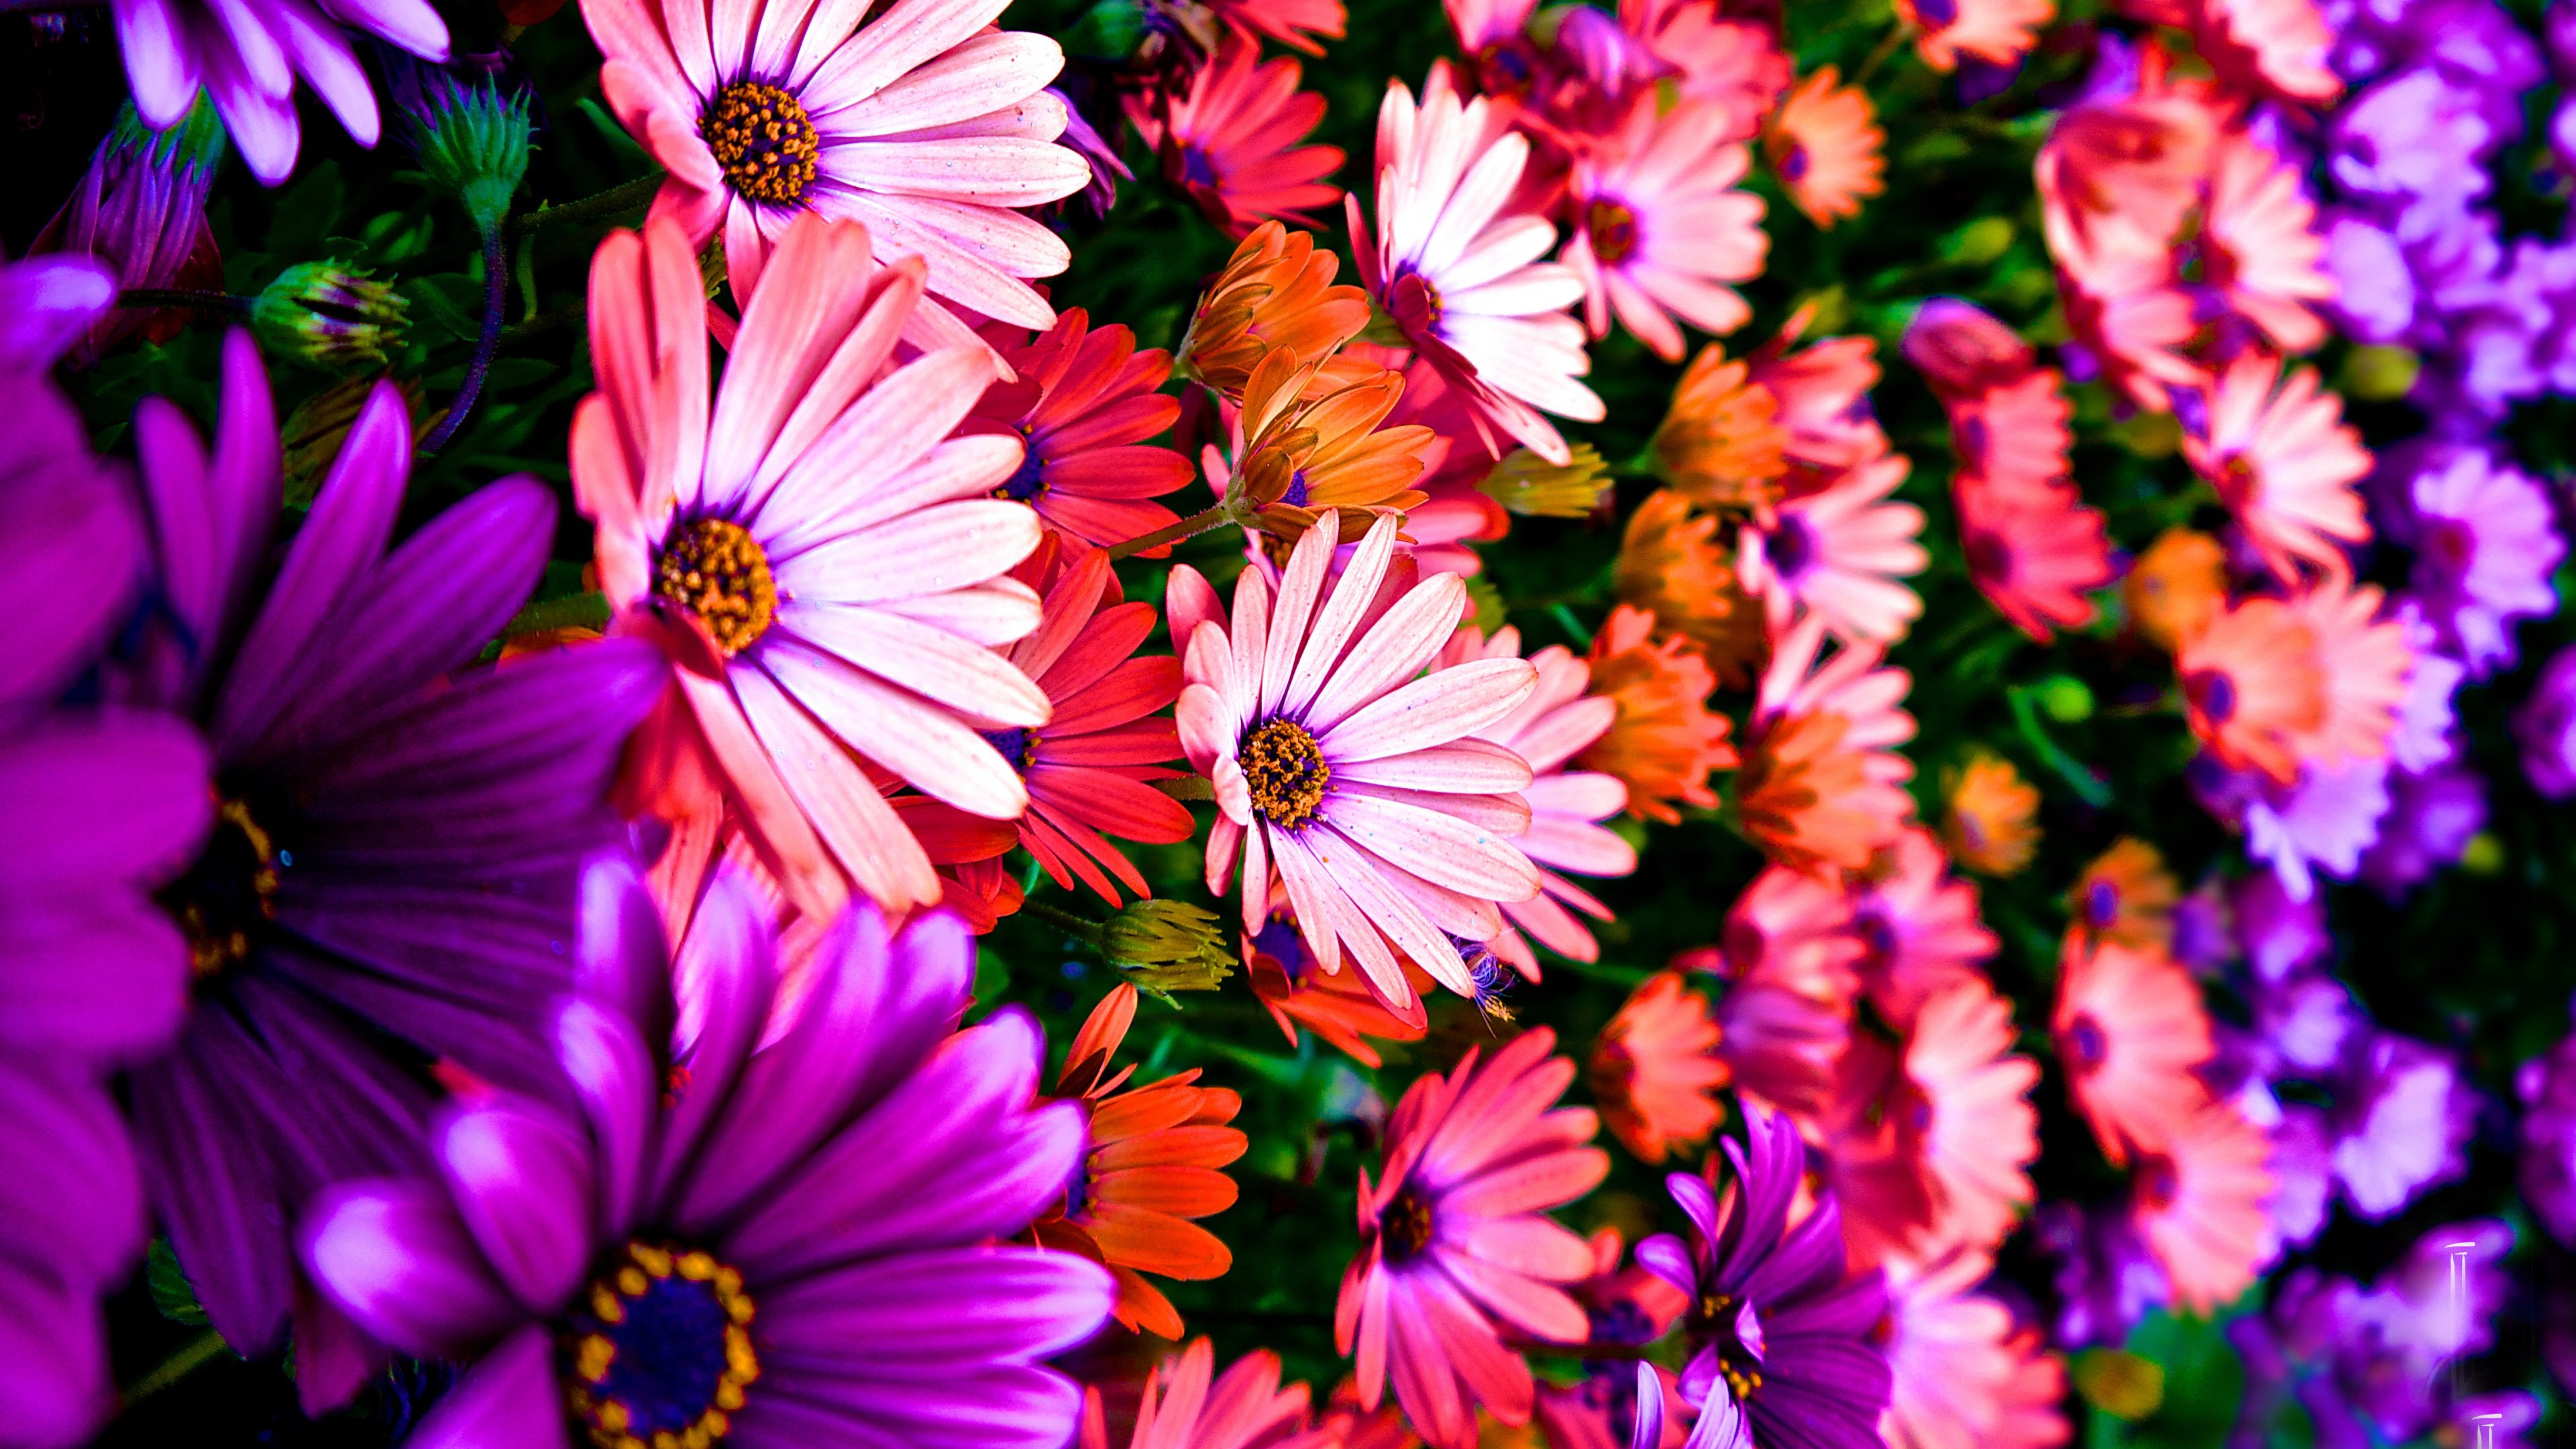 Фото на телефон на заставку цветы красивые